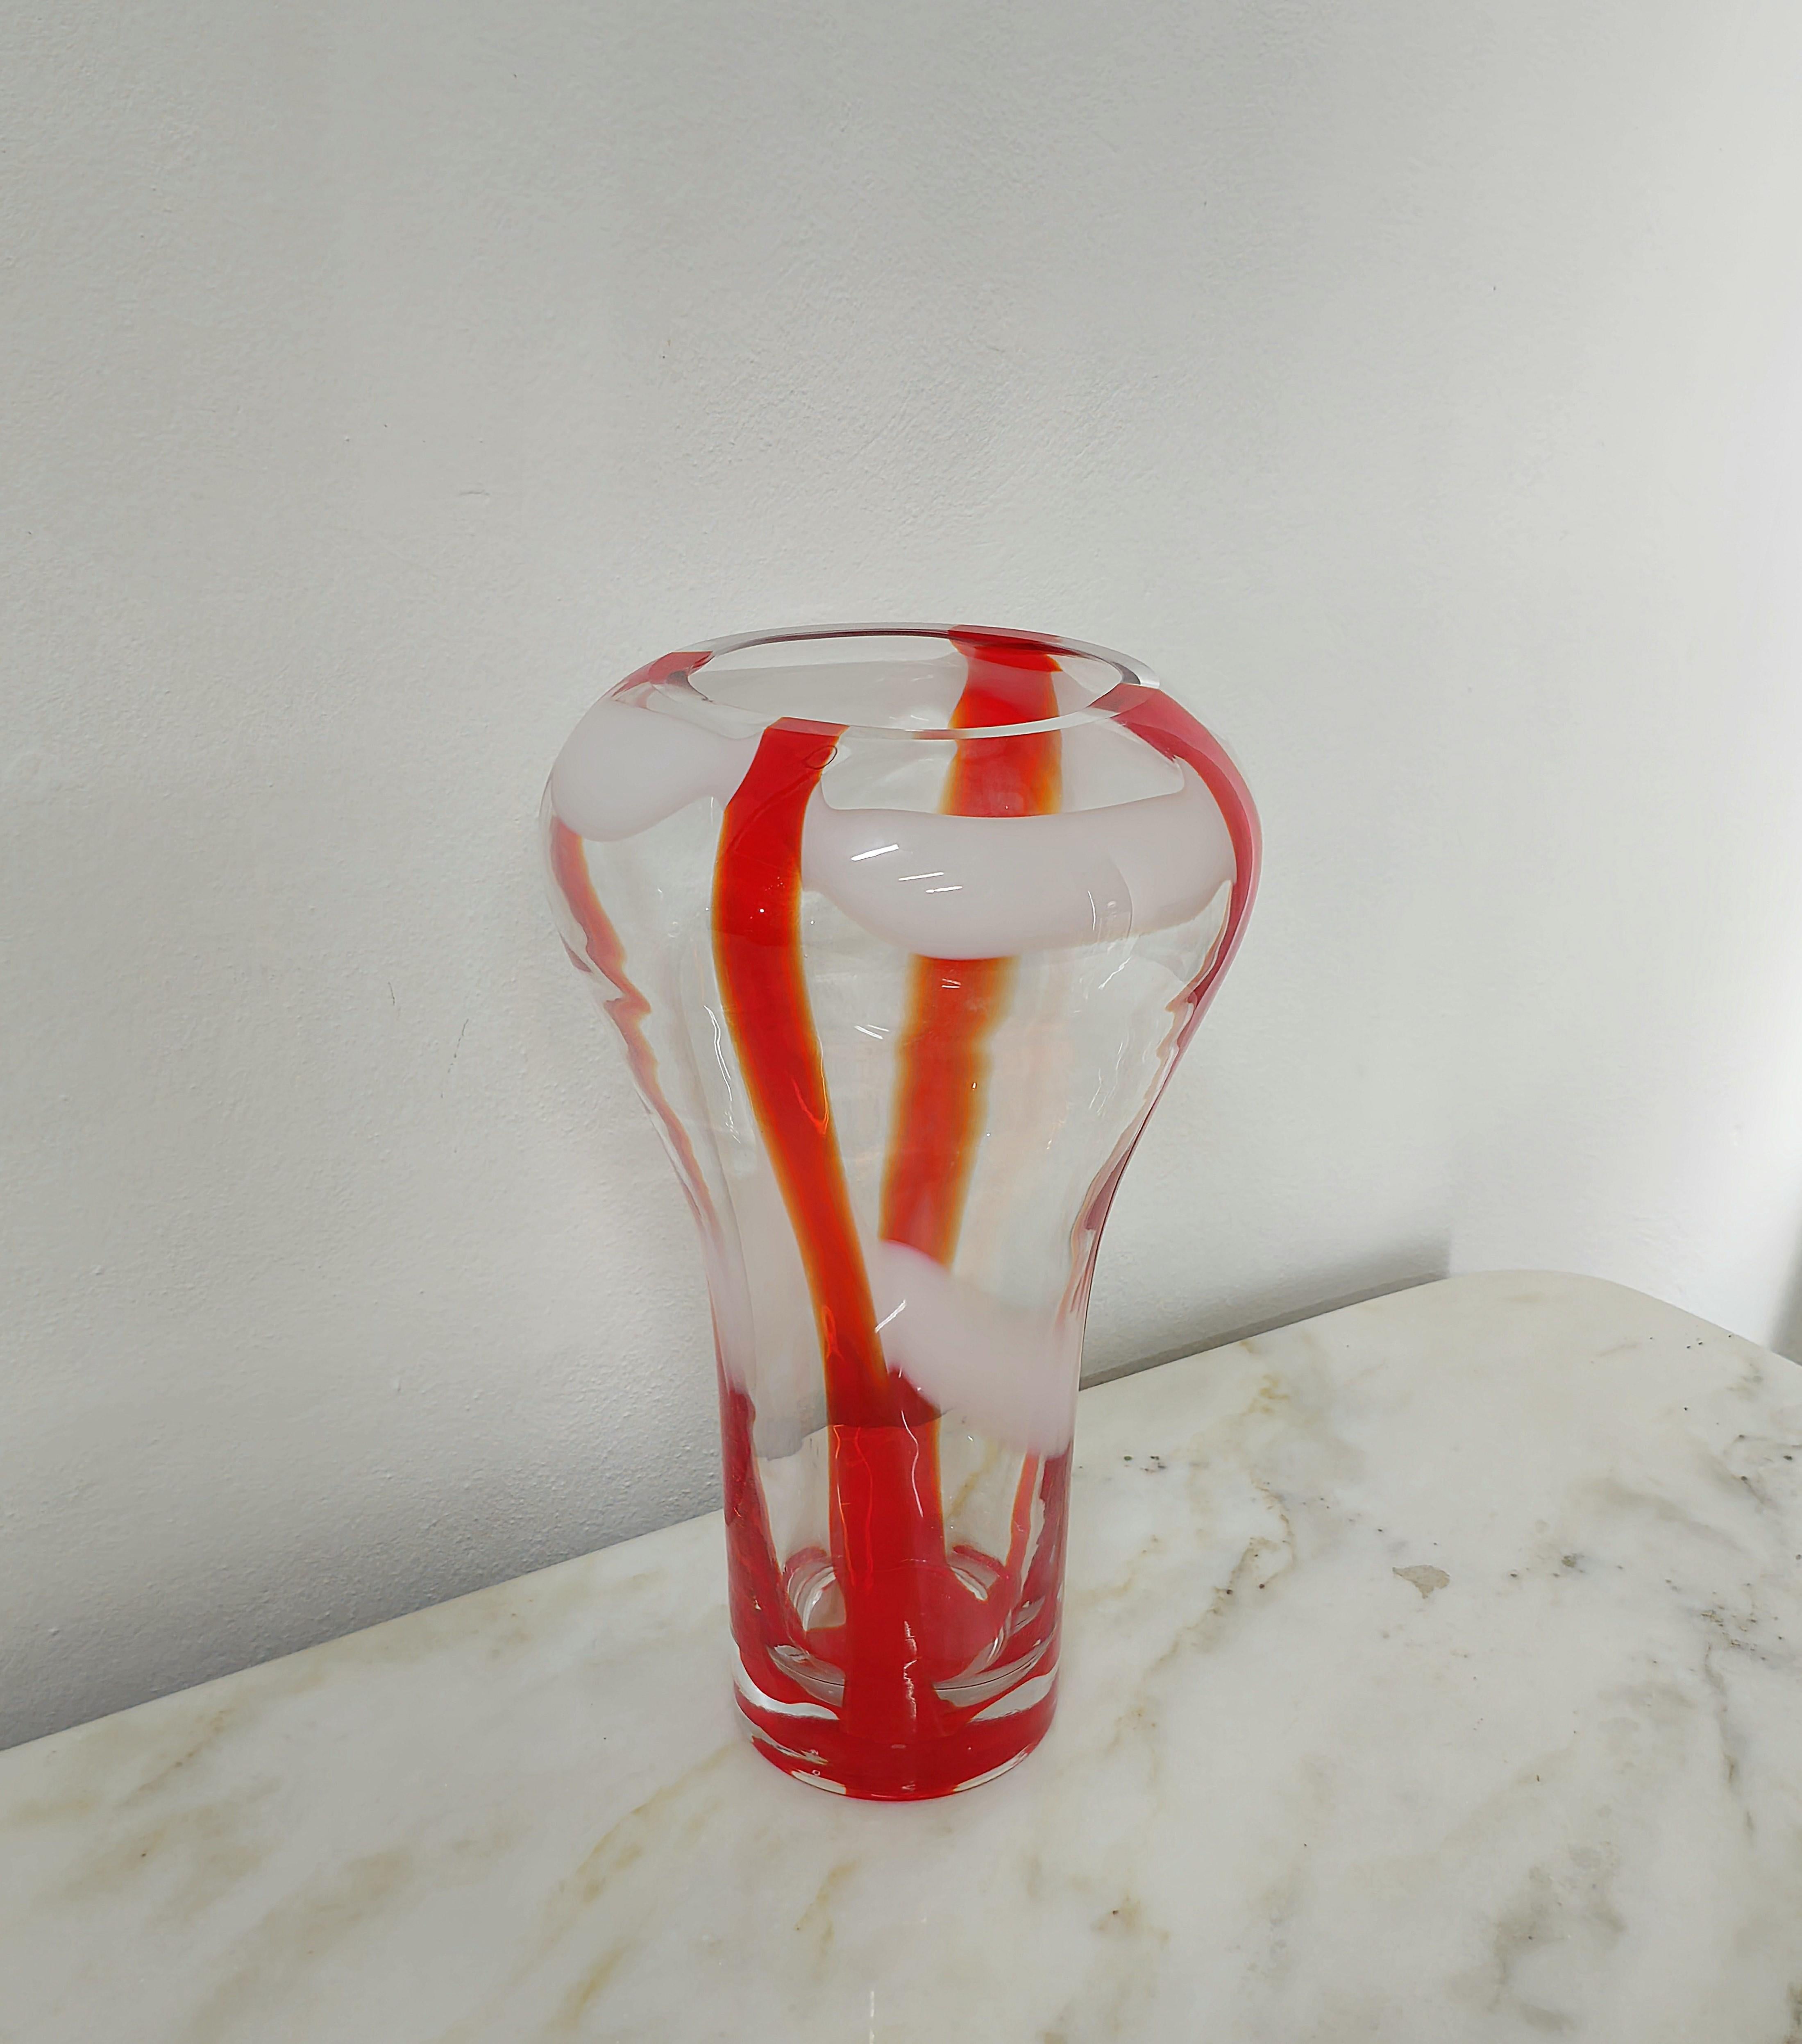 Decorative Object Vase Guzzini Murano Glass Midcentury Italian Design 1970s In Good Condition For Sale In Palermo, IT